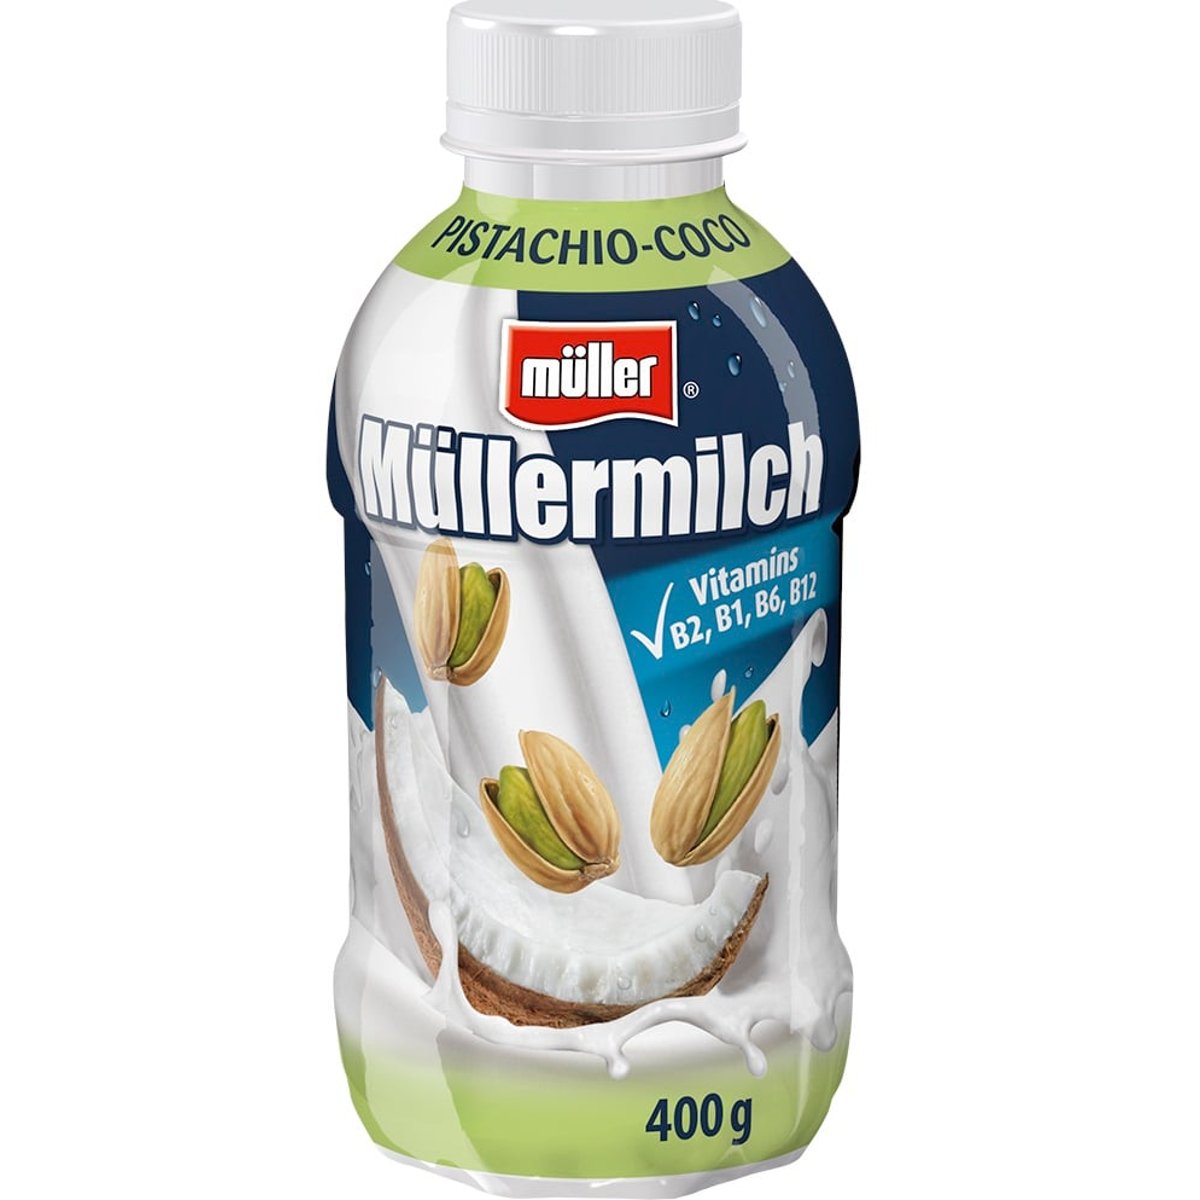 Müllermilch Mléčný nápoj s pistáciovo-kokosovou příchutí v akci